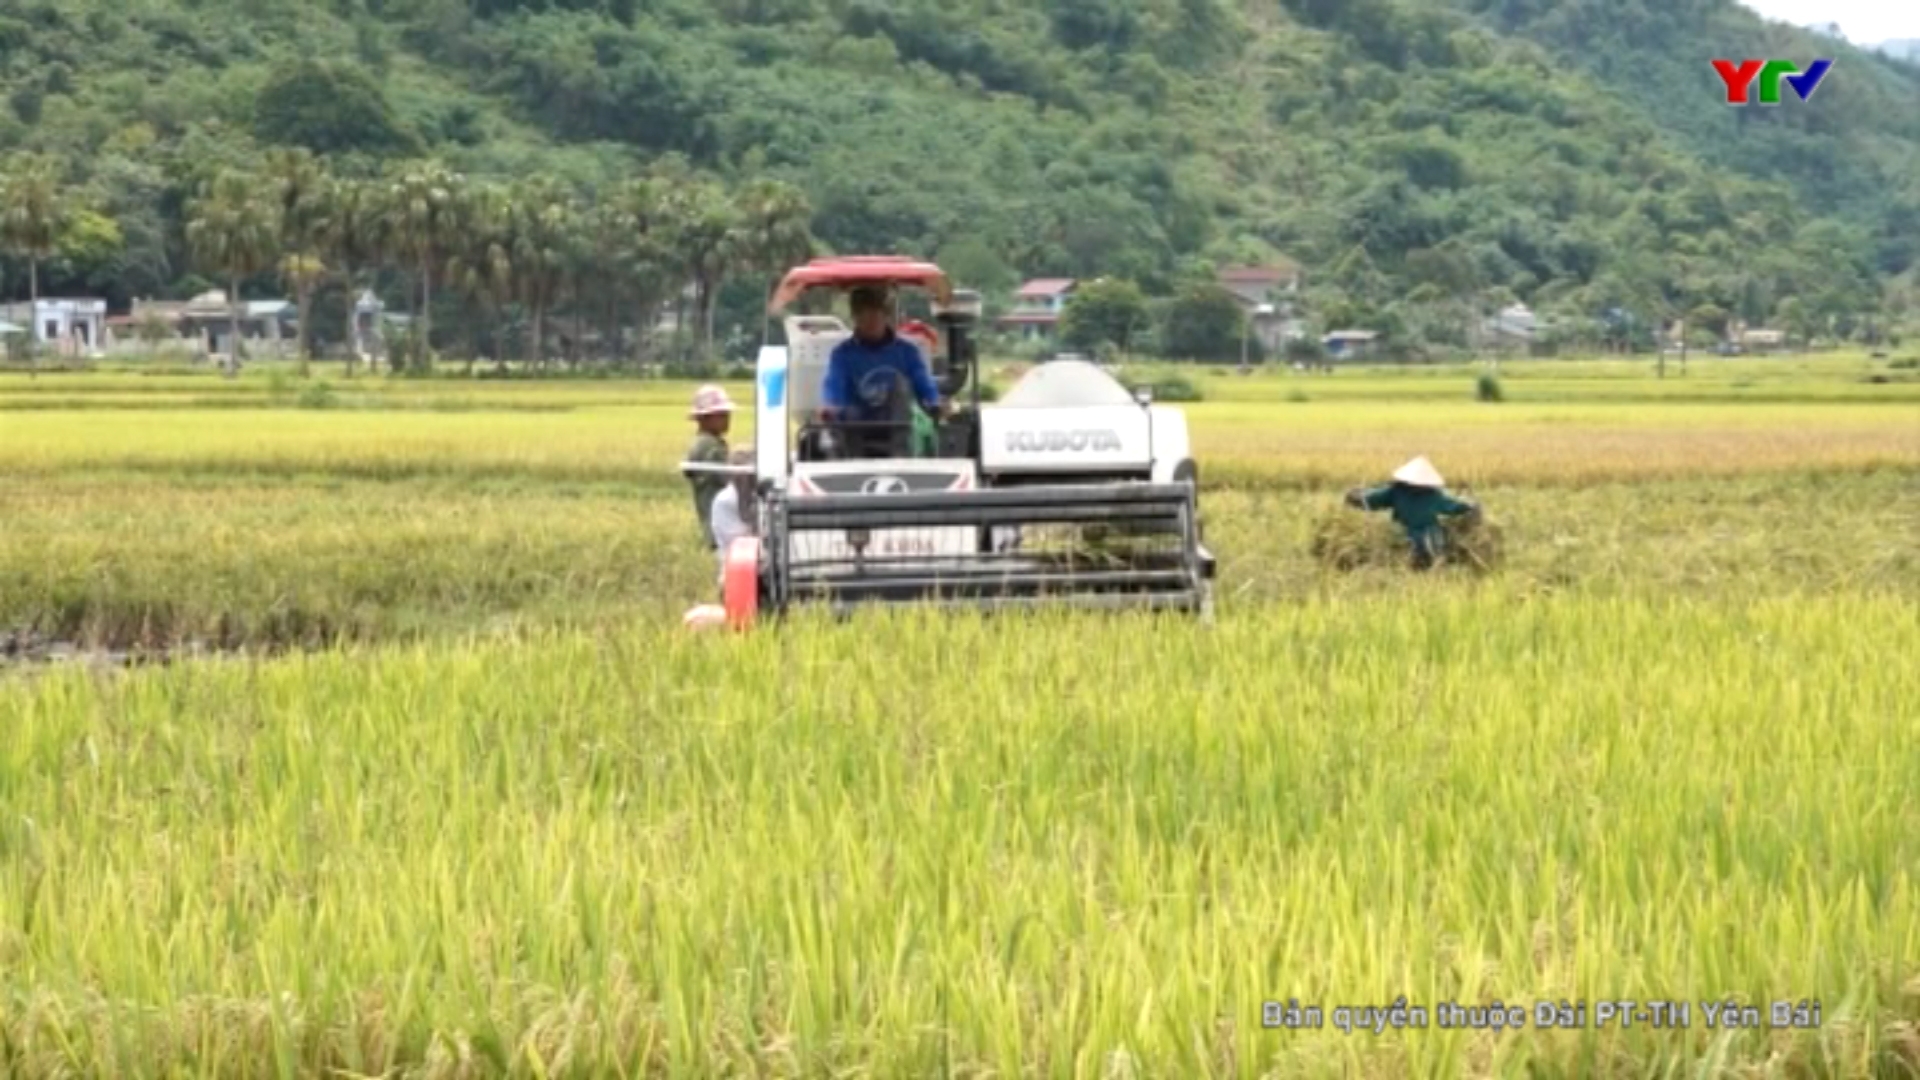 Hiệu quả từ việc đưa cơ giới hóa vào sản xuất nông nghiệp ở Lục Yên